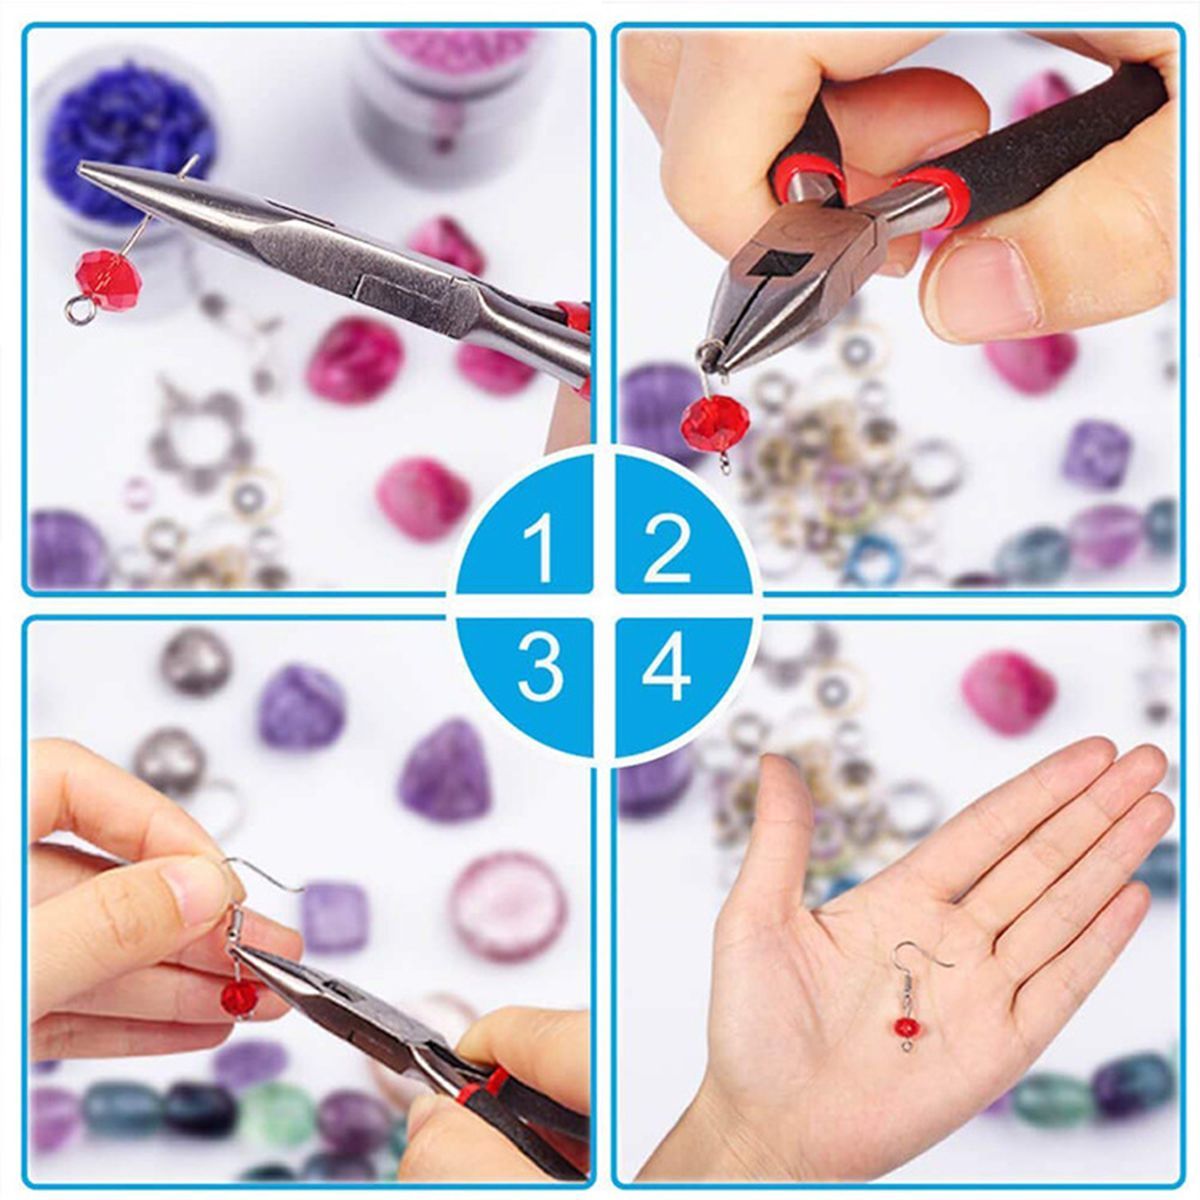 Necklace-Bracelet-Earrings-Set-Jewelry-DIY-Making-Kit-Handmade-Jewelry-Making-1735466